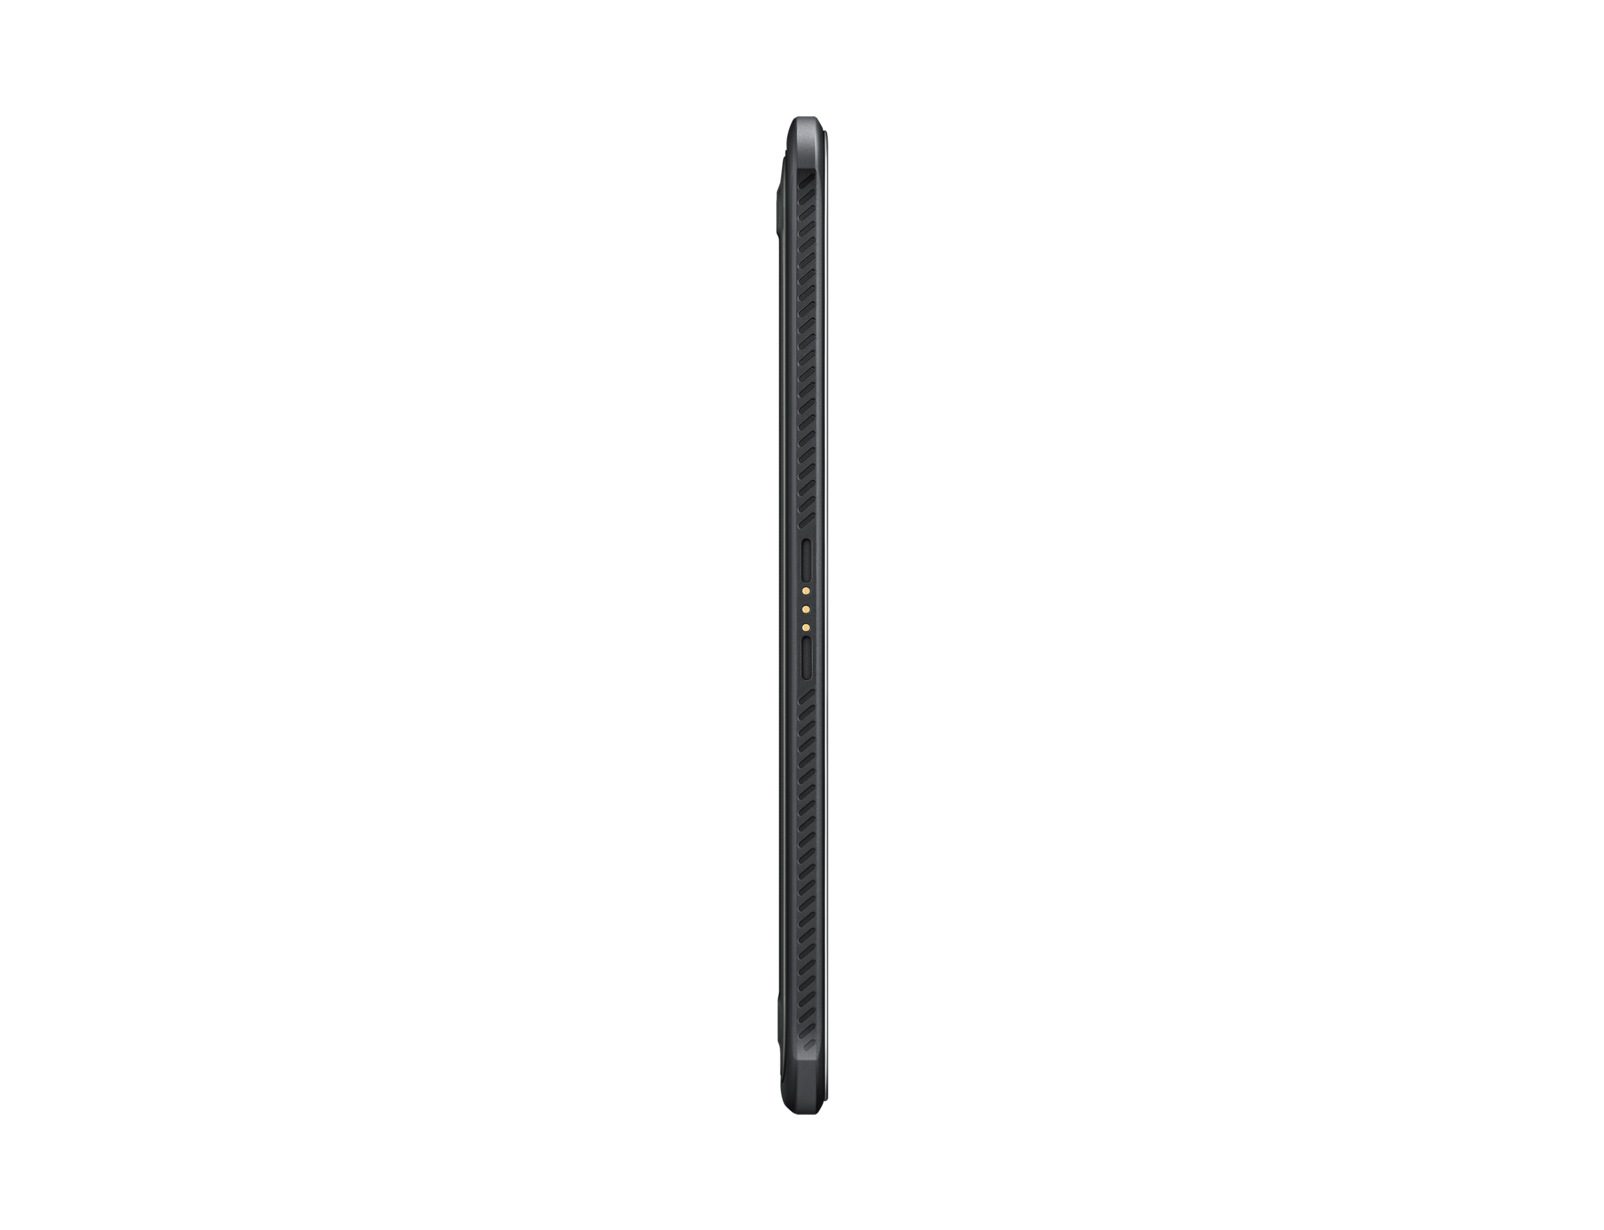 Samsung Galaxy Tab Active SM-T360